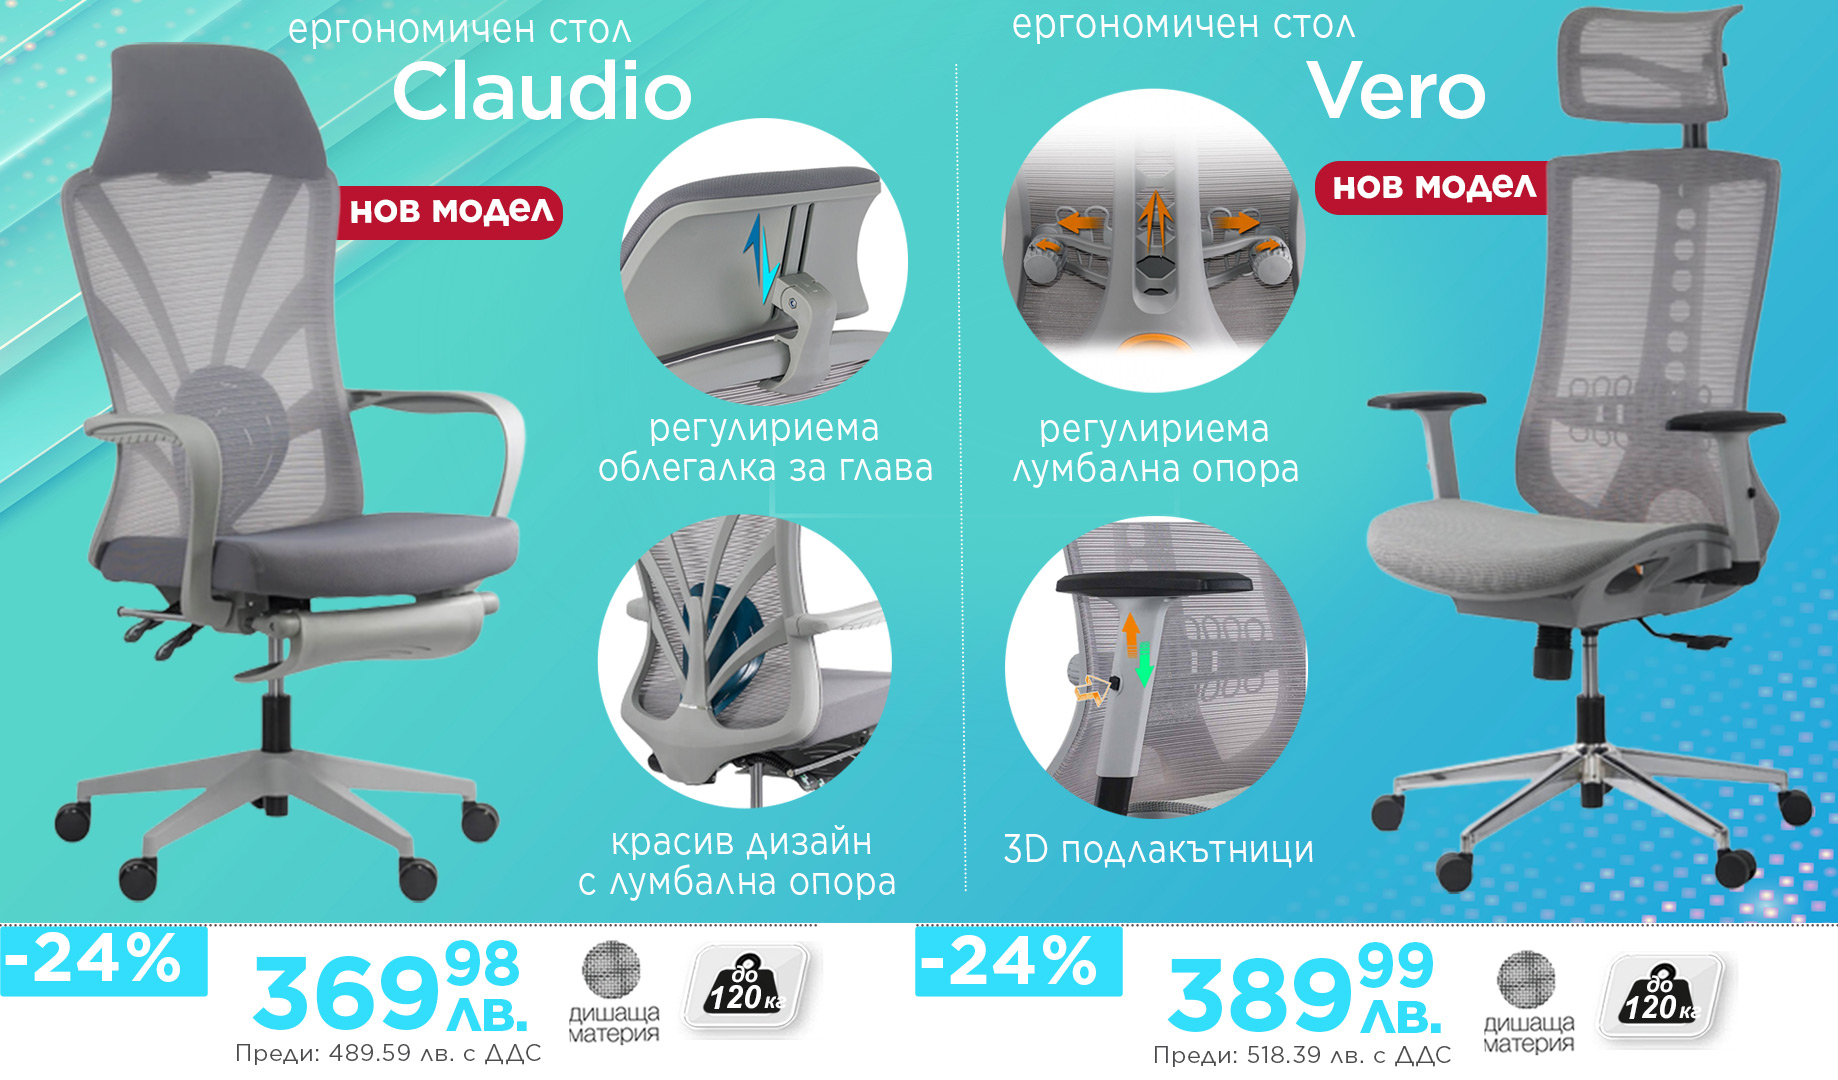 Ергономични столове Claudio Vero